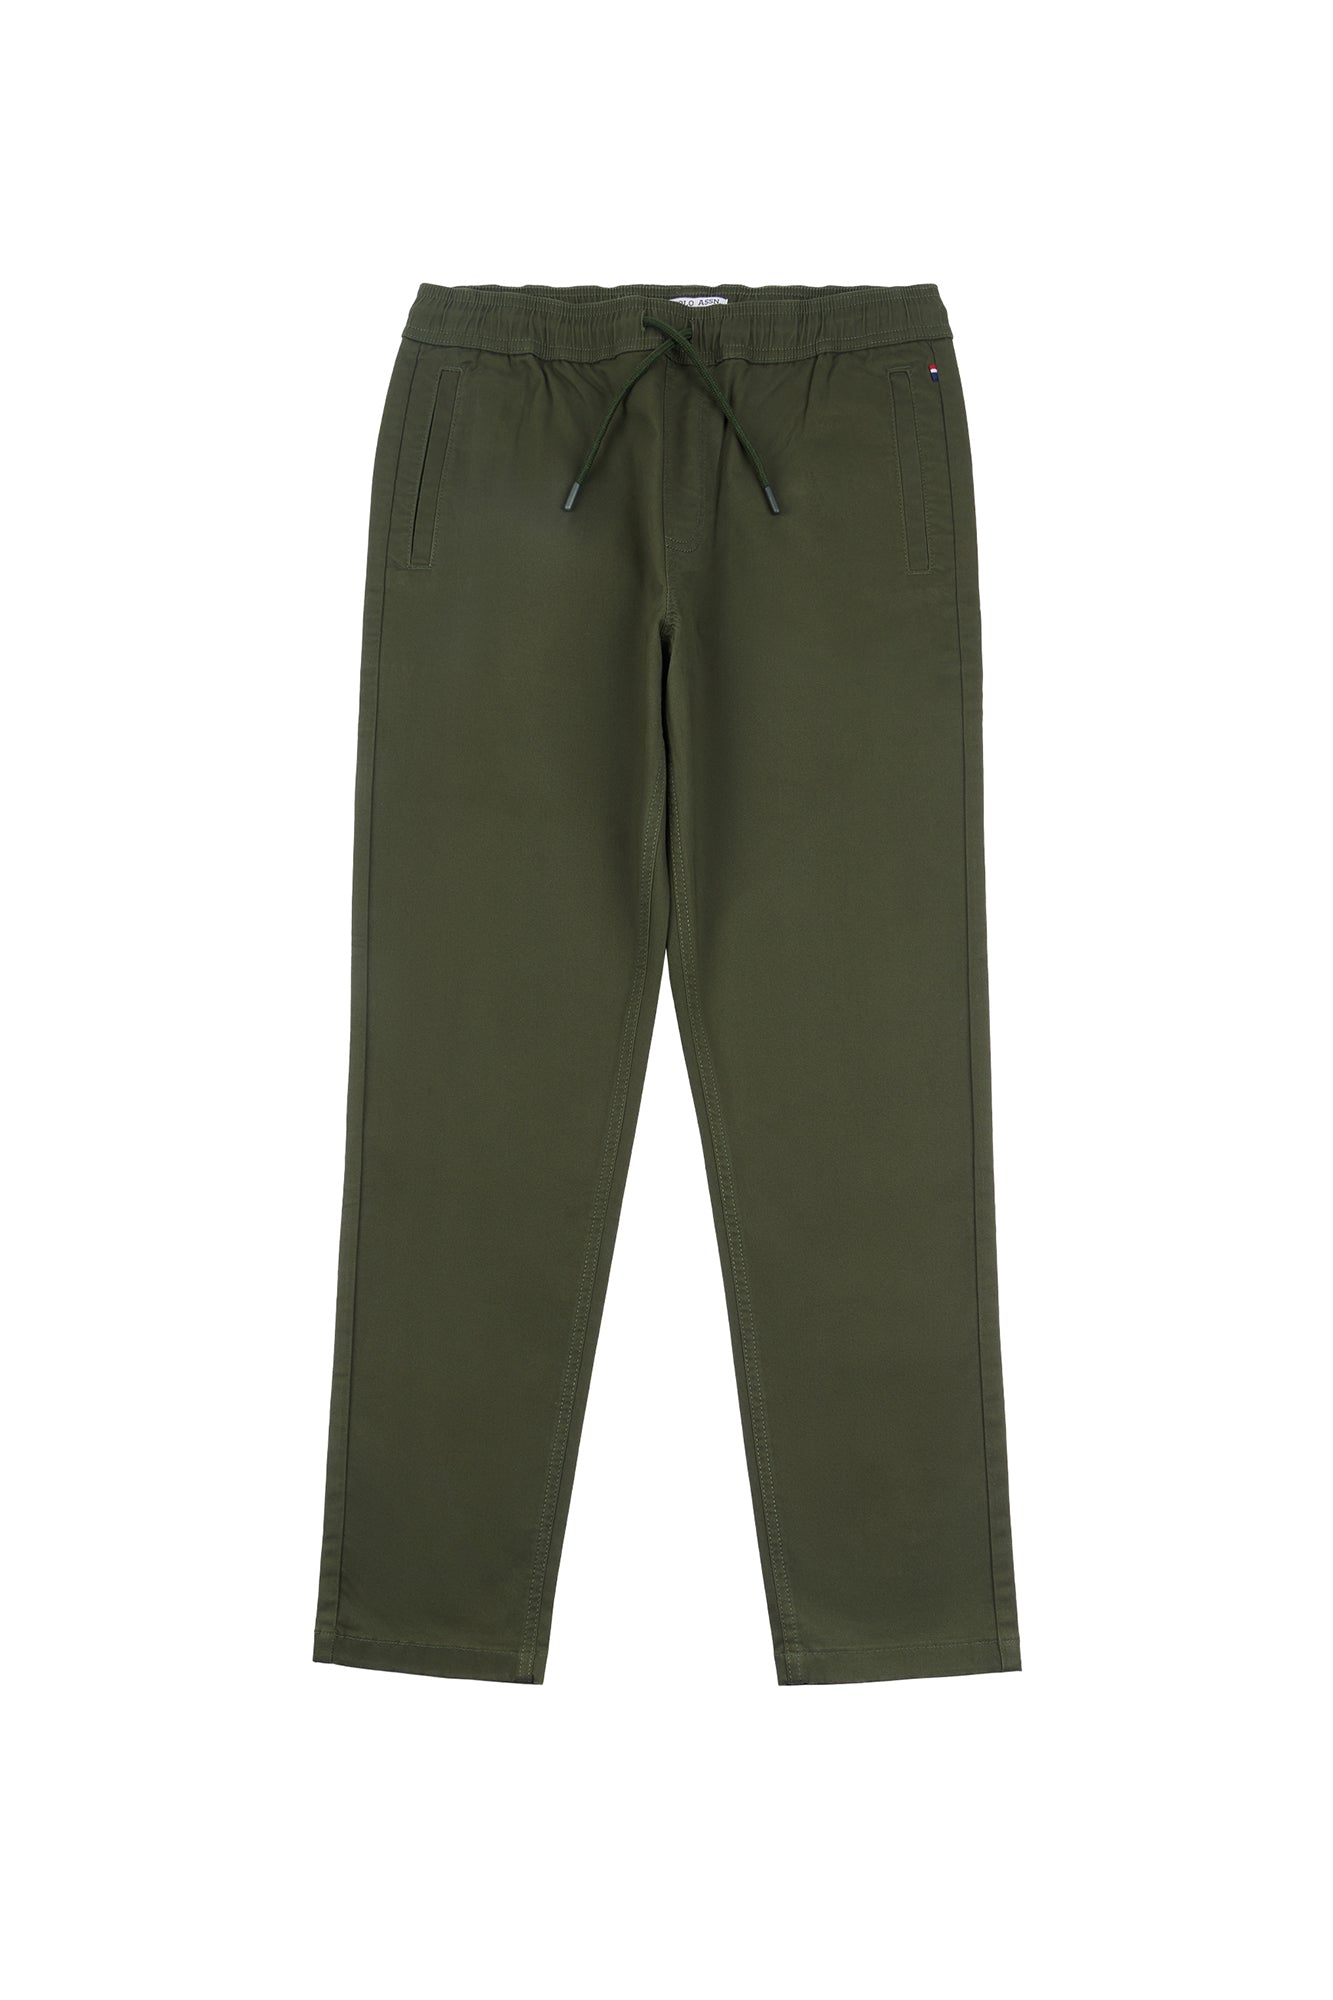 U.S. Polo Assn. Mens Linen Blend Drawstring Trousers in Dark Sapphire Navy  – U.S. Polo Assn. UK